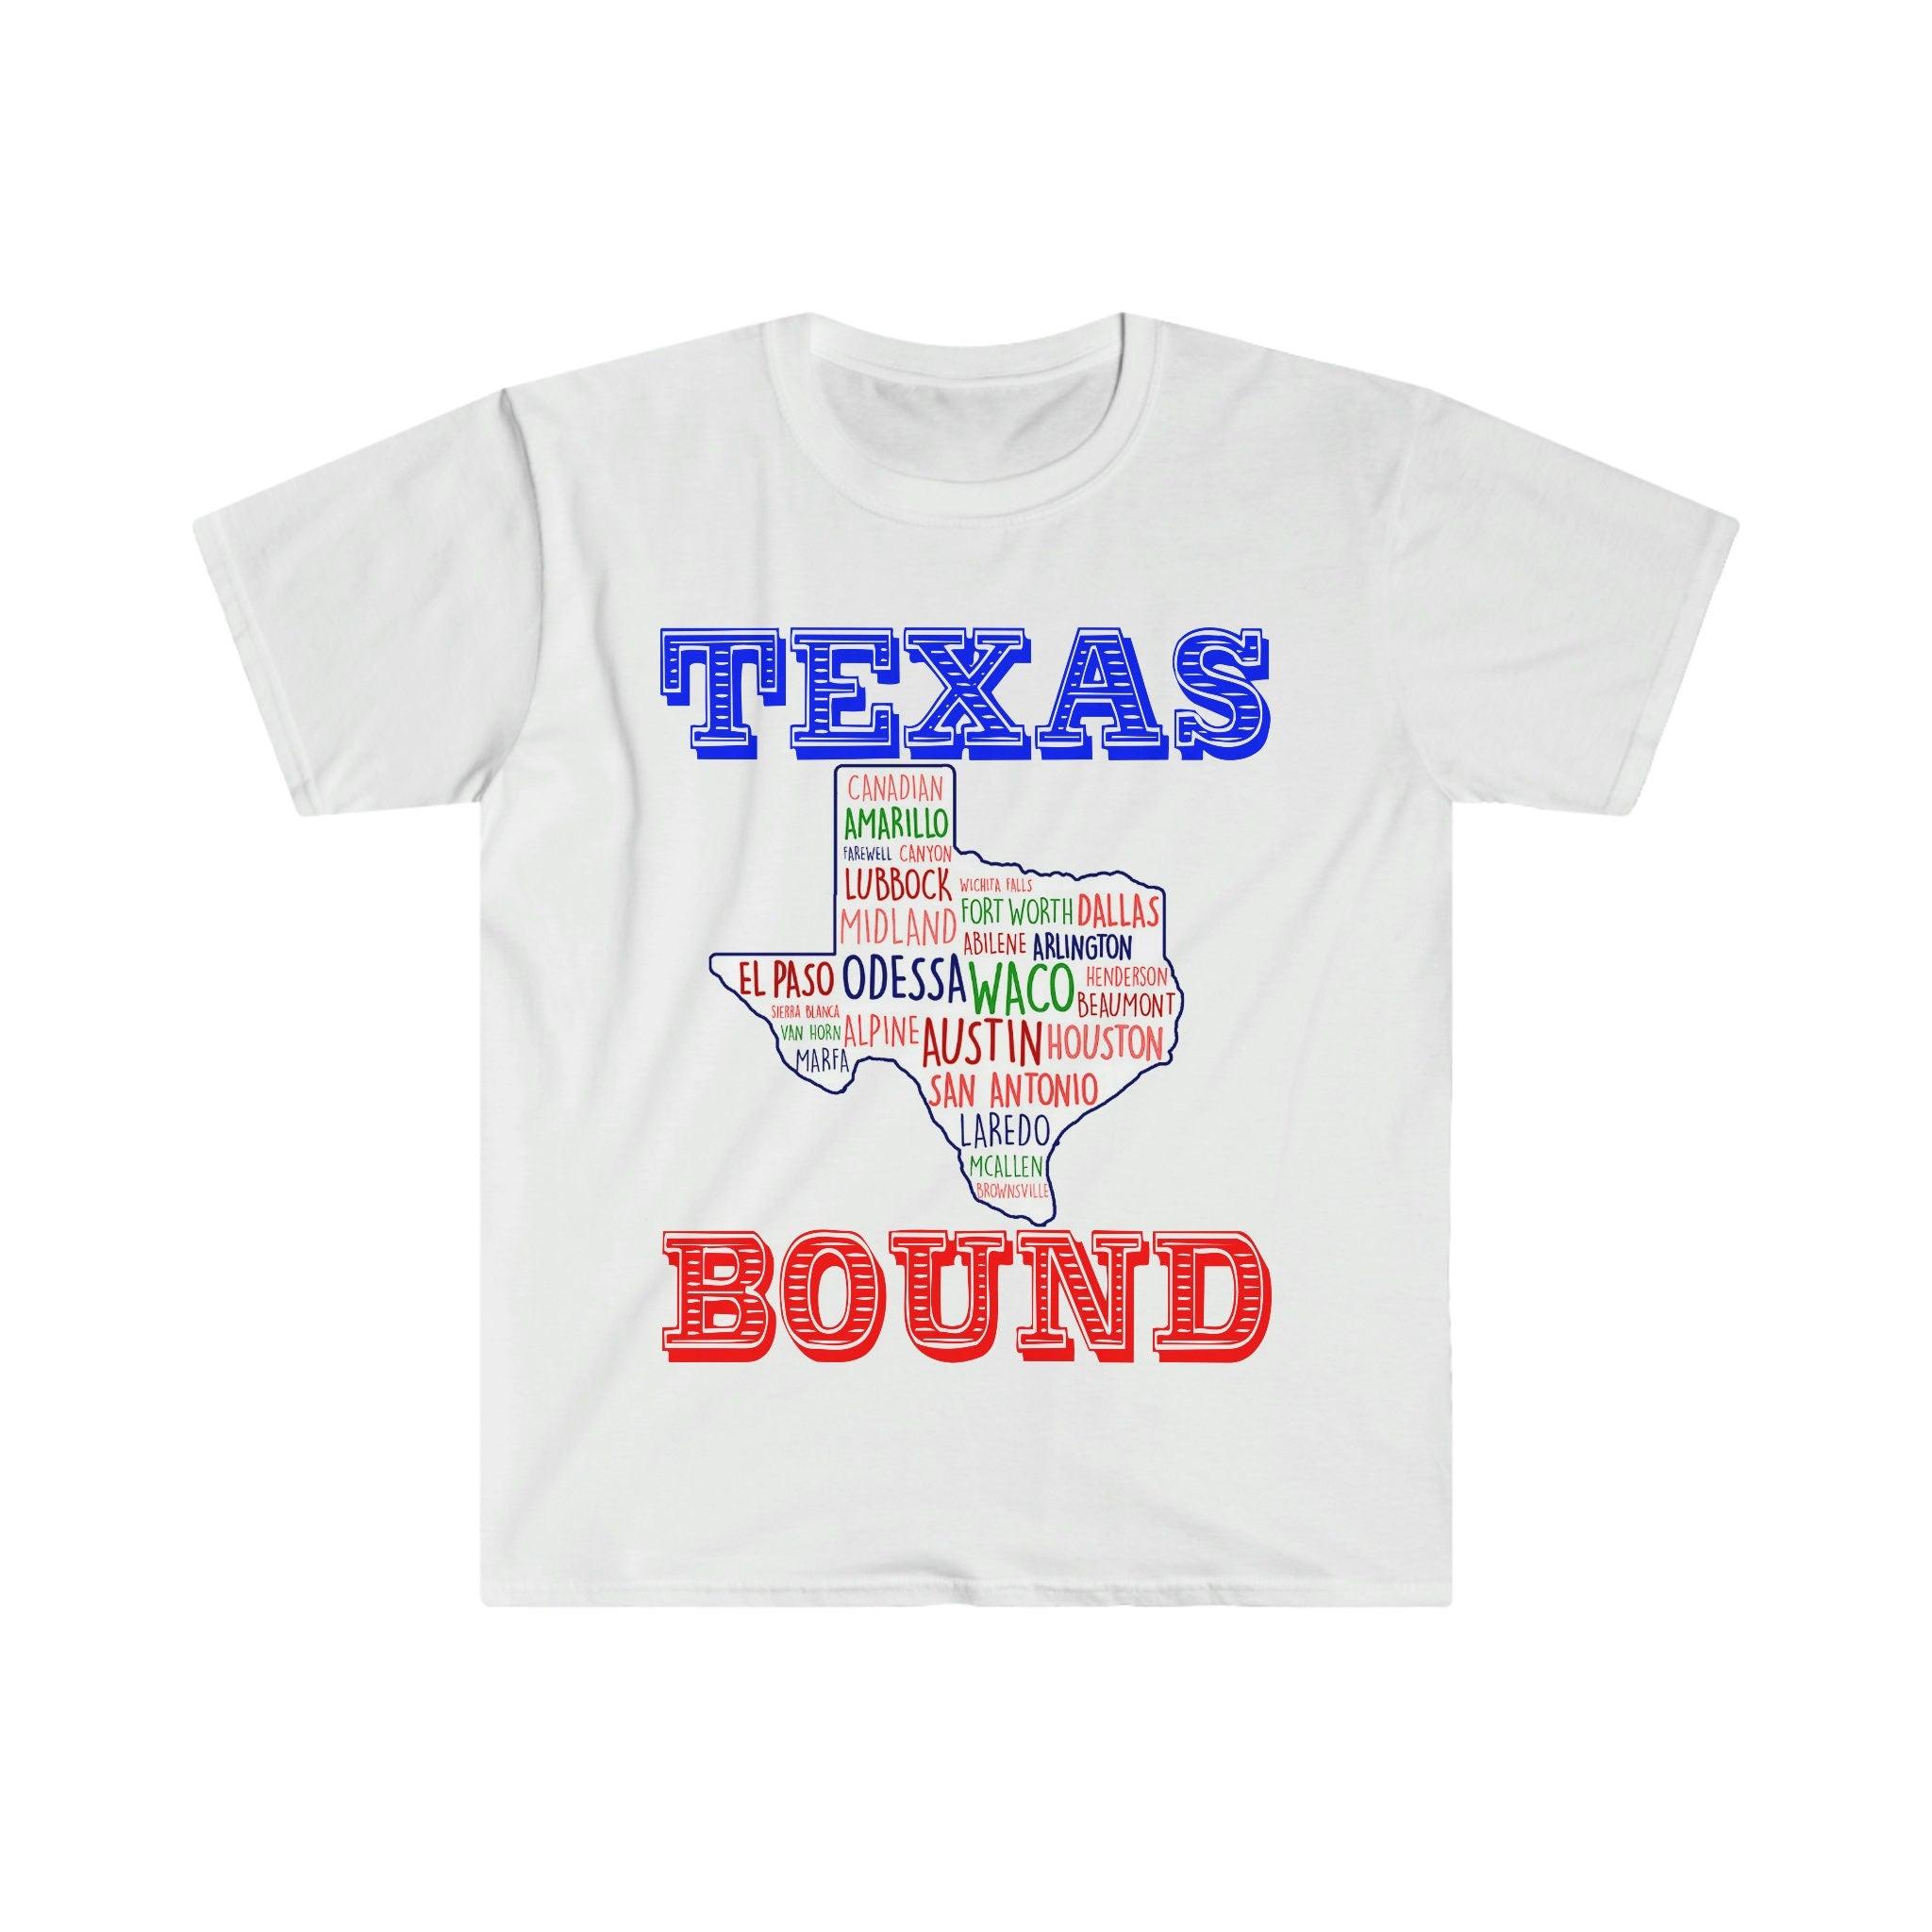 Обвързан с Тексас | Texas Places T-Shirts | Texas Map T-Shirts, Moving to Austin , Welcome to Texas Gift, Texas Bound, New in Texas, Moving to DFW Beat Biden данъчно увеличение, Biden данъчен план, крайбрежен либерален, Хюстън, преместване в Остин, Преместване към DFW, Преместване в Тексас, Преместване в Тексас чаша, Ново в Тексас, републиканец, тениска, тениски, обвързана с Тексас, момиче от Тексас, републиканка от Тексас в - plusminusco.com